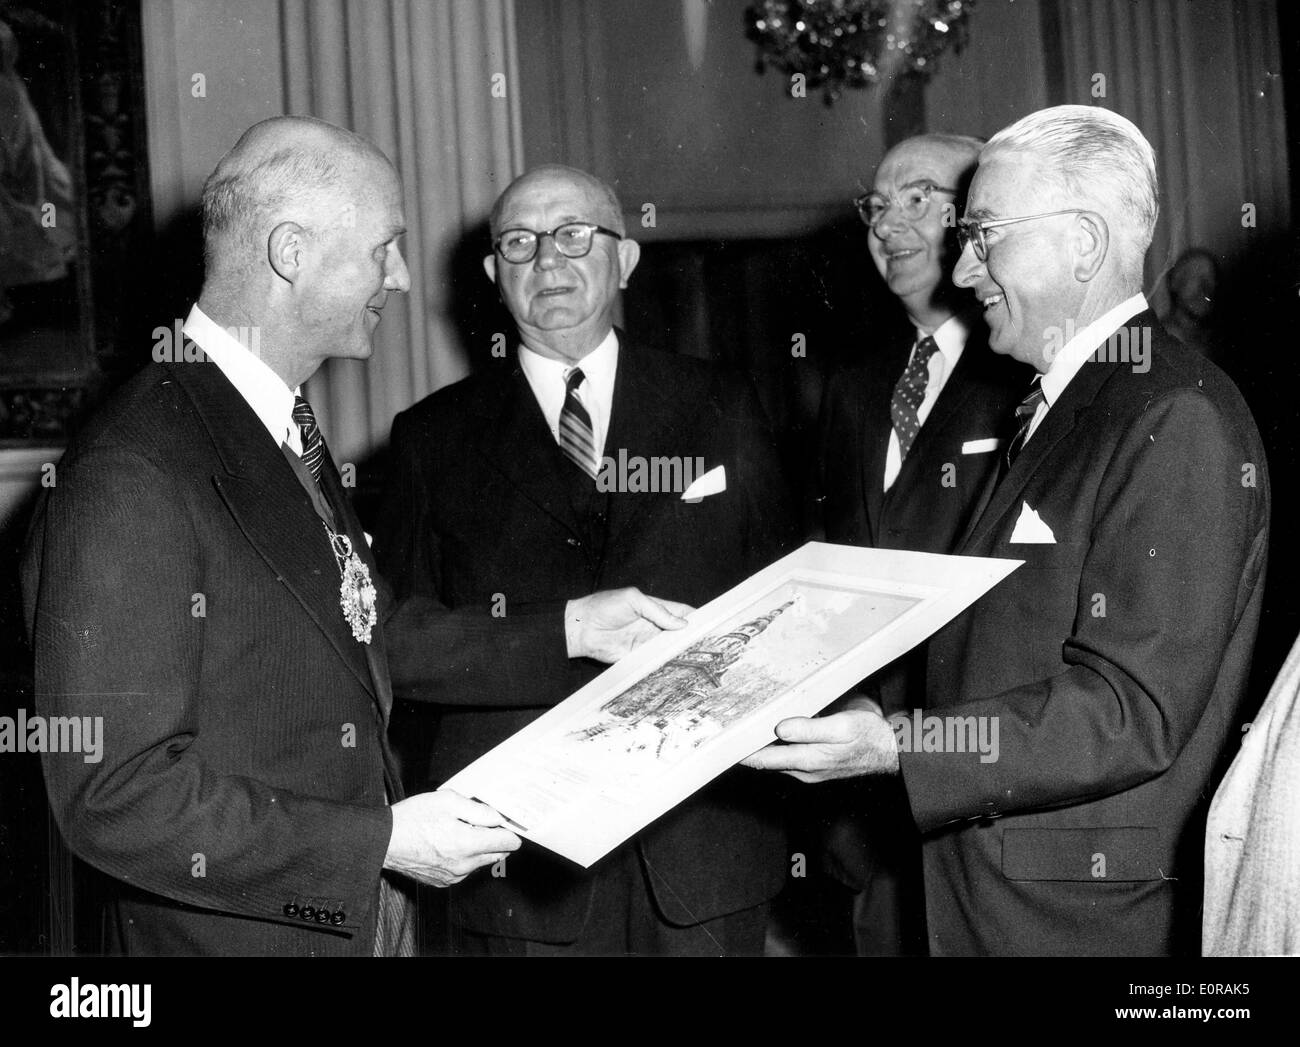 Il Sep 23, 1958 - Londra, Inghilterra, Regno Unito - File (foto) da sinistra, Sir DENNIS TRUSCOTT, Sindaco di Londra, riceve un attacco dal U.S. città di Baltimora ha presentato da EDWARD CORCORAN, CHARLES P. CRAIN e AVERY W. HALL, a Mansion House. Foto Stock